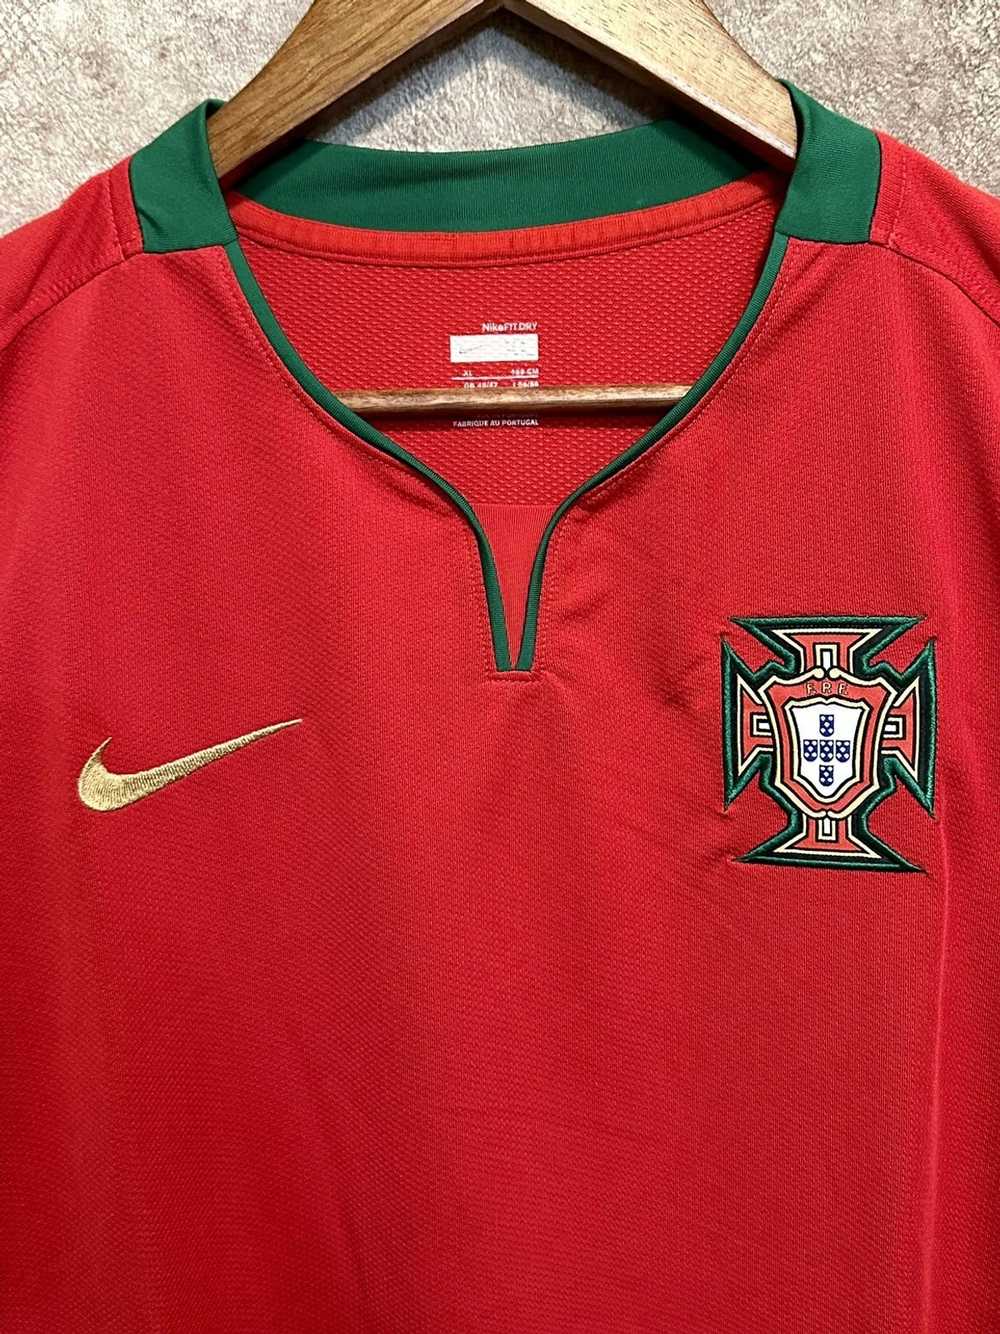 Nike × Soccer Jersey × Vintage Nike Portugal vint… - image 3